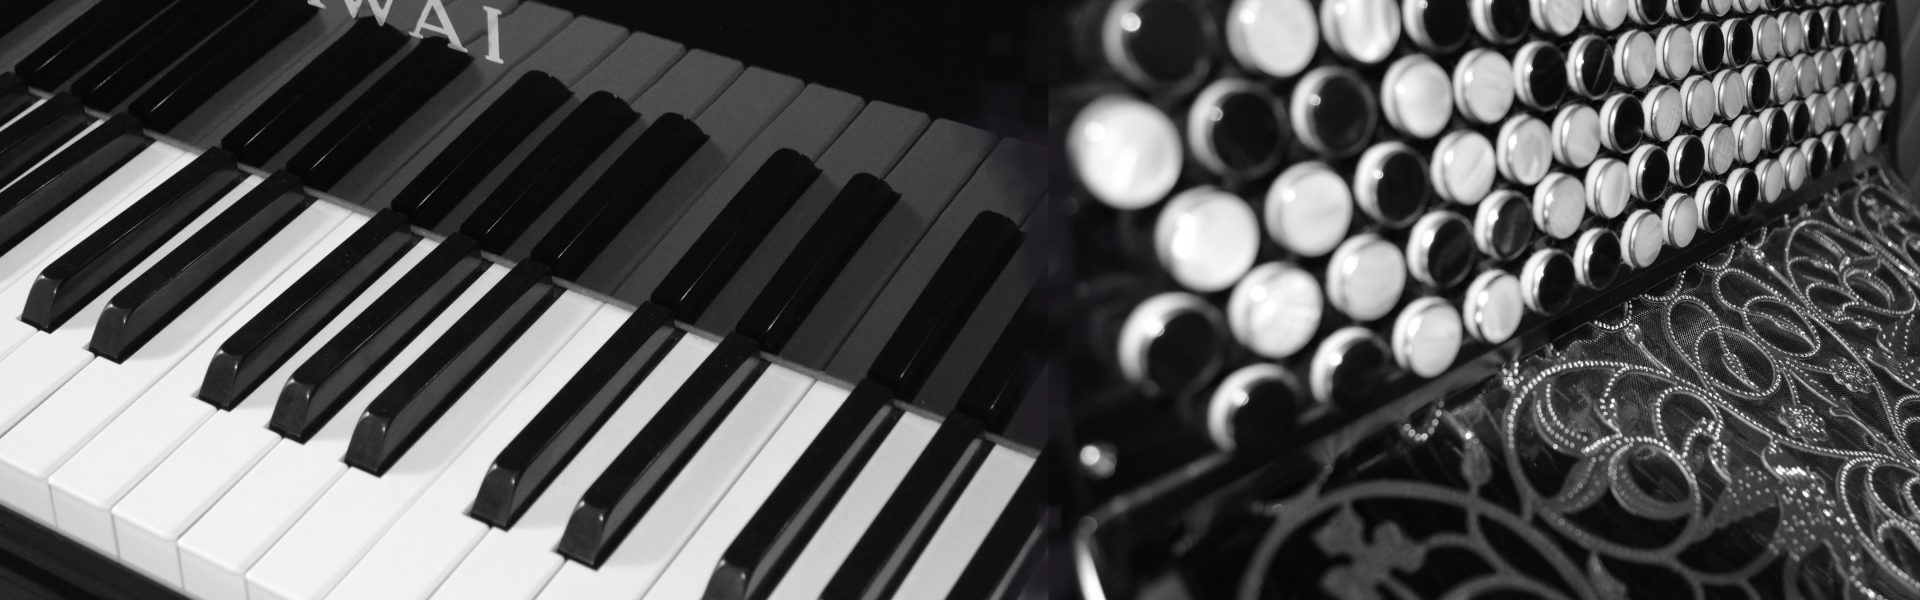 Le nombre de touches - Choisir son clavier (piano numérique, arrangeur,  synthé, clavier maître) - EasyZic